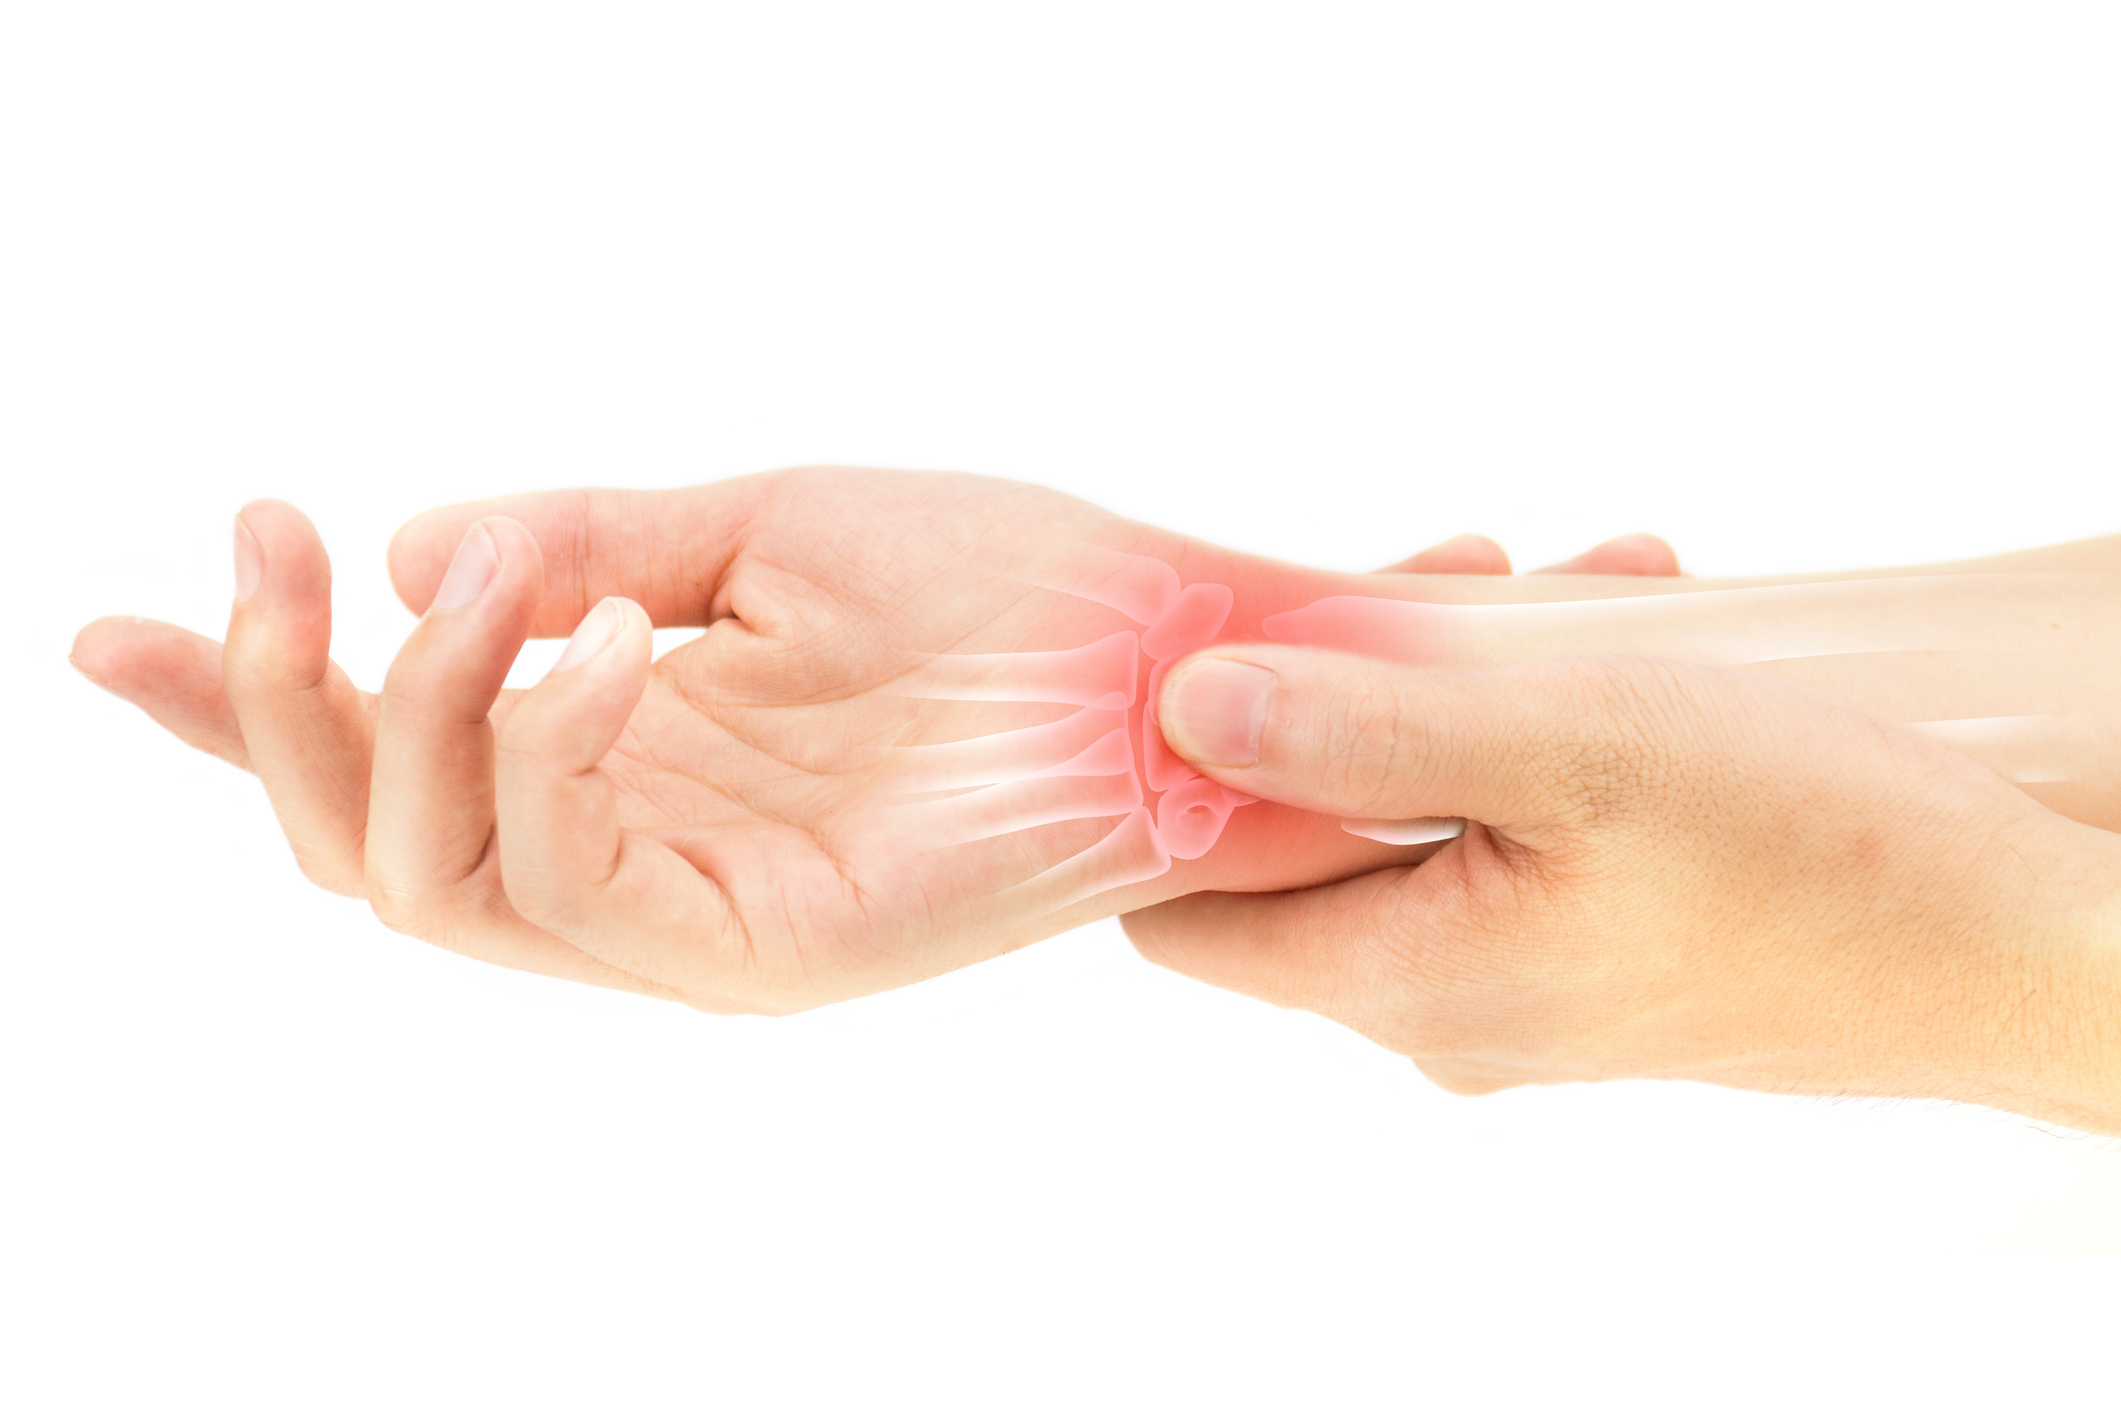 Cele mai frecvente cauze ale durerilor de mâini. De la artrită la sindrom de tunel carpian